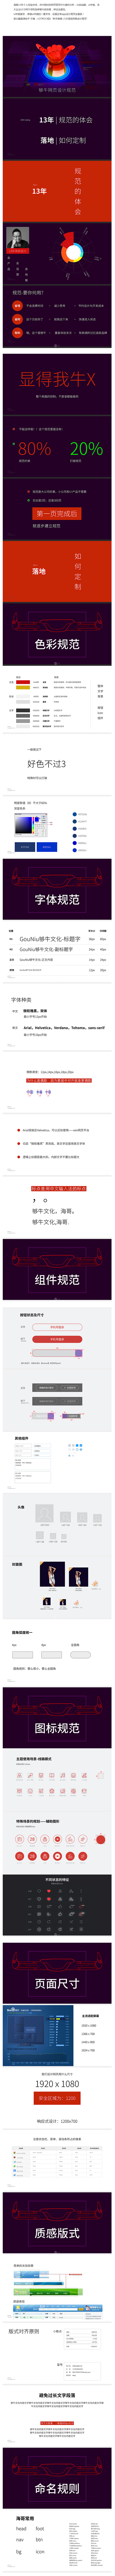 最全最新-够牛网页设计规范-UI中国-专...